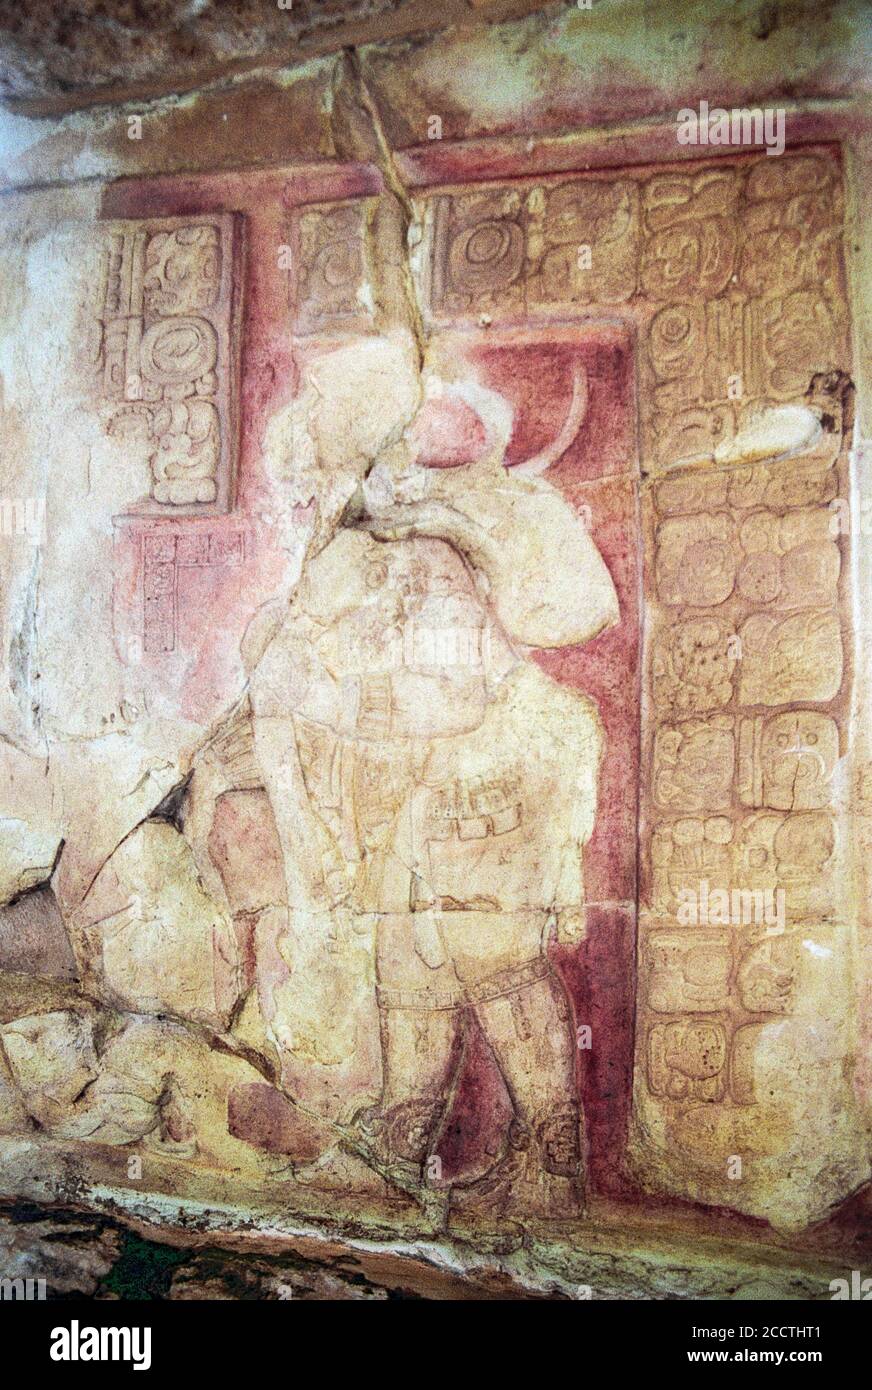 Überreste von dem, was eine sehr detaillierte Erleichterung gewesen war. Originale rote und schwarze Farbe ist zu sehen. Yaxchilan Maya Ruinen; Chiapas, Mexiko. Vintage Film Bild - ca. 1990. Stockfoto